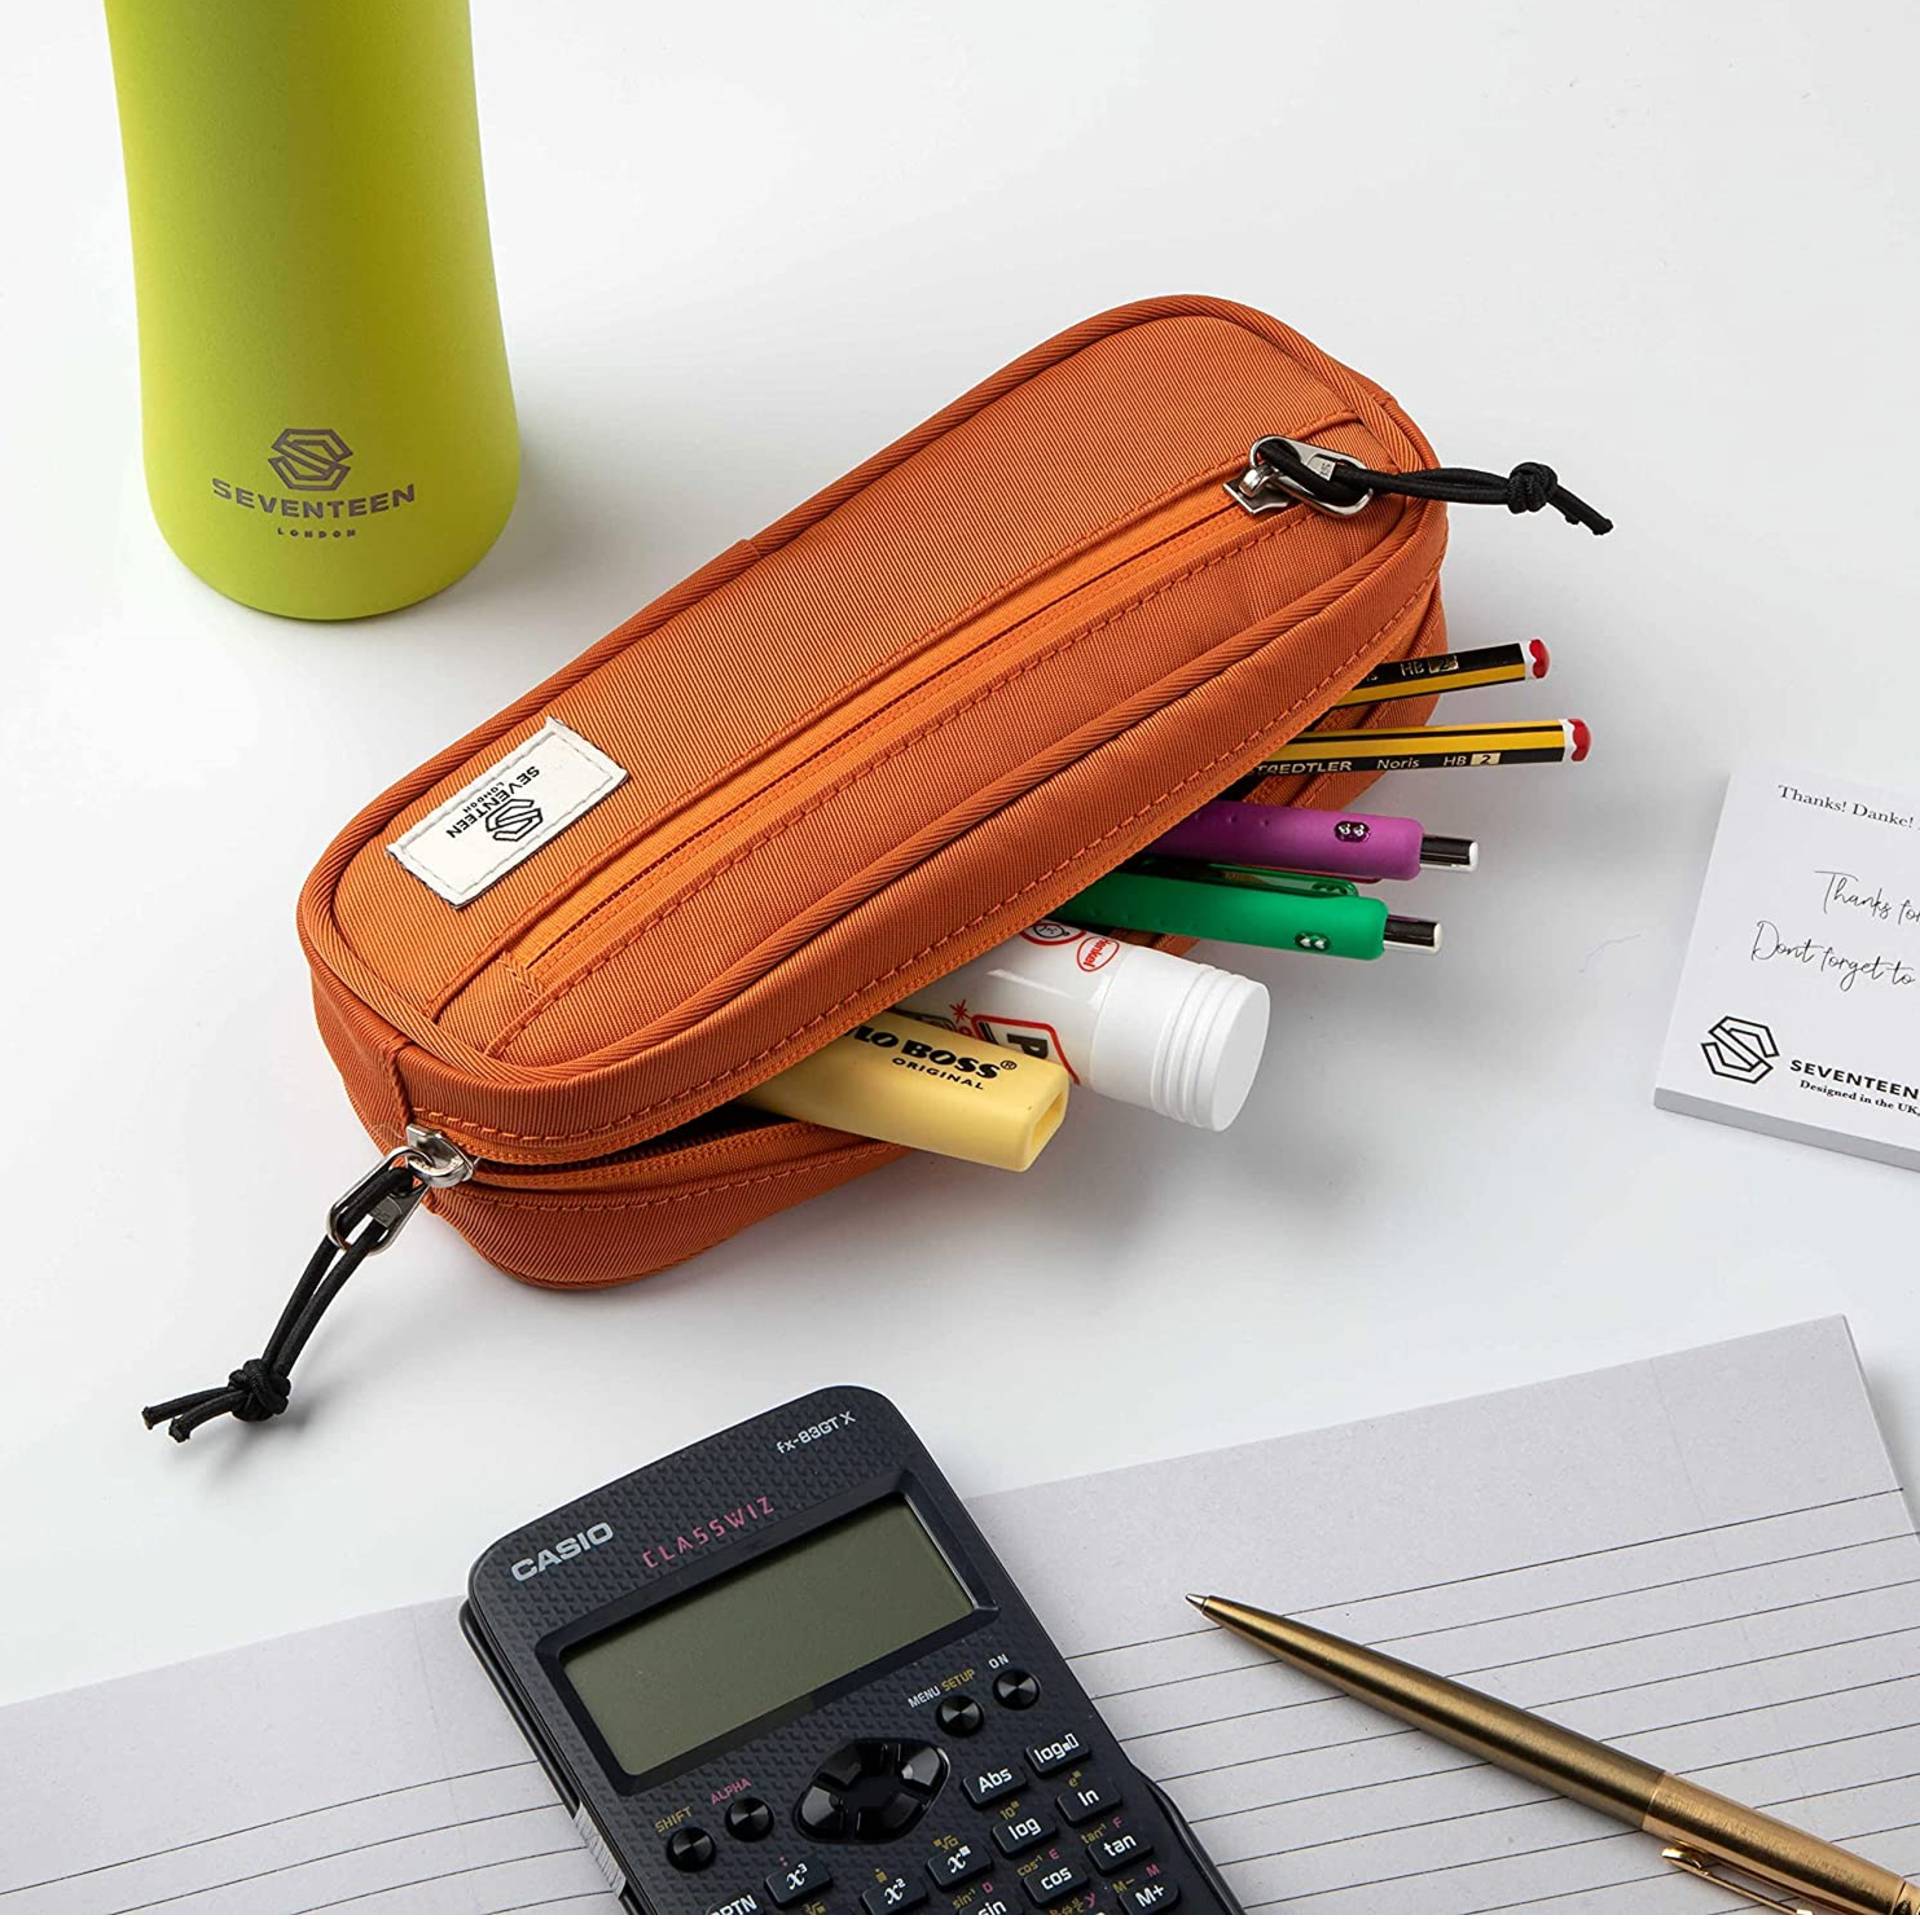 Mitcham Pencil Case - Orange - Seventeen London